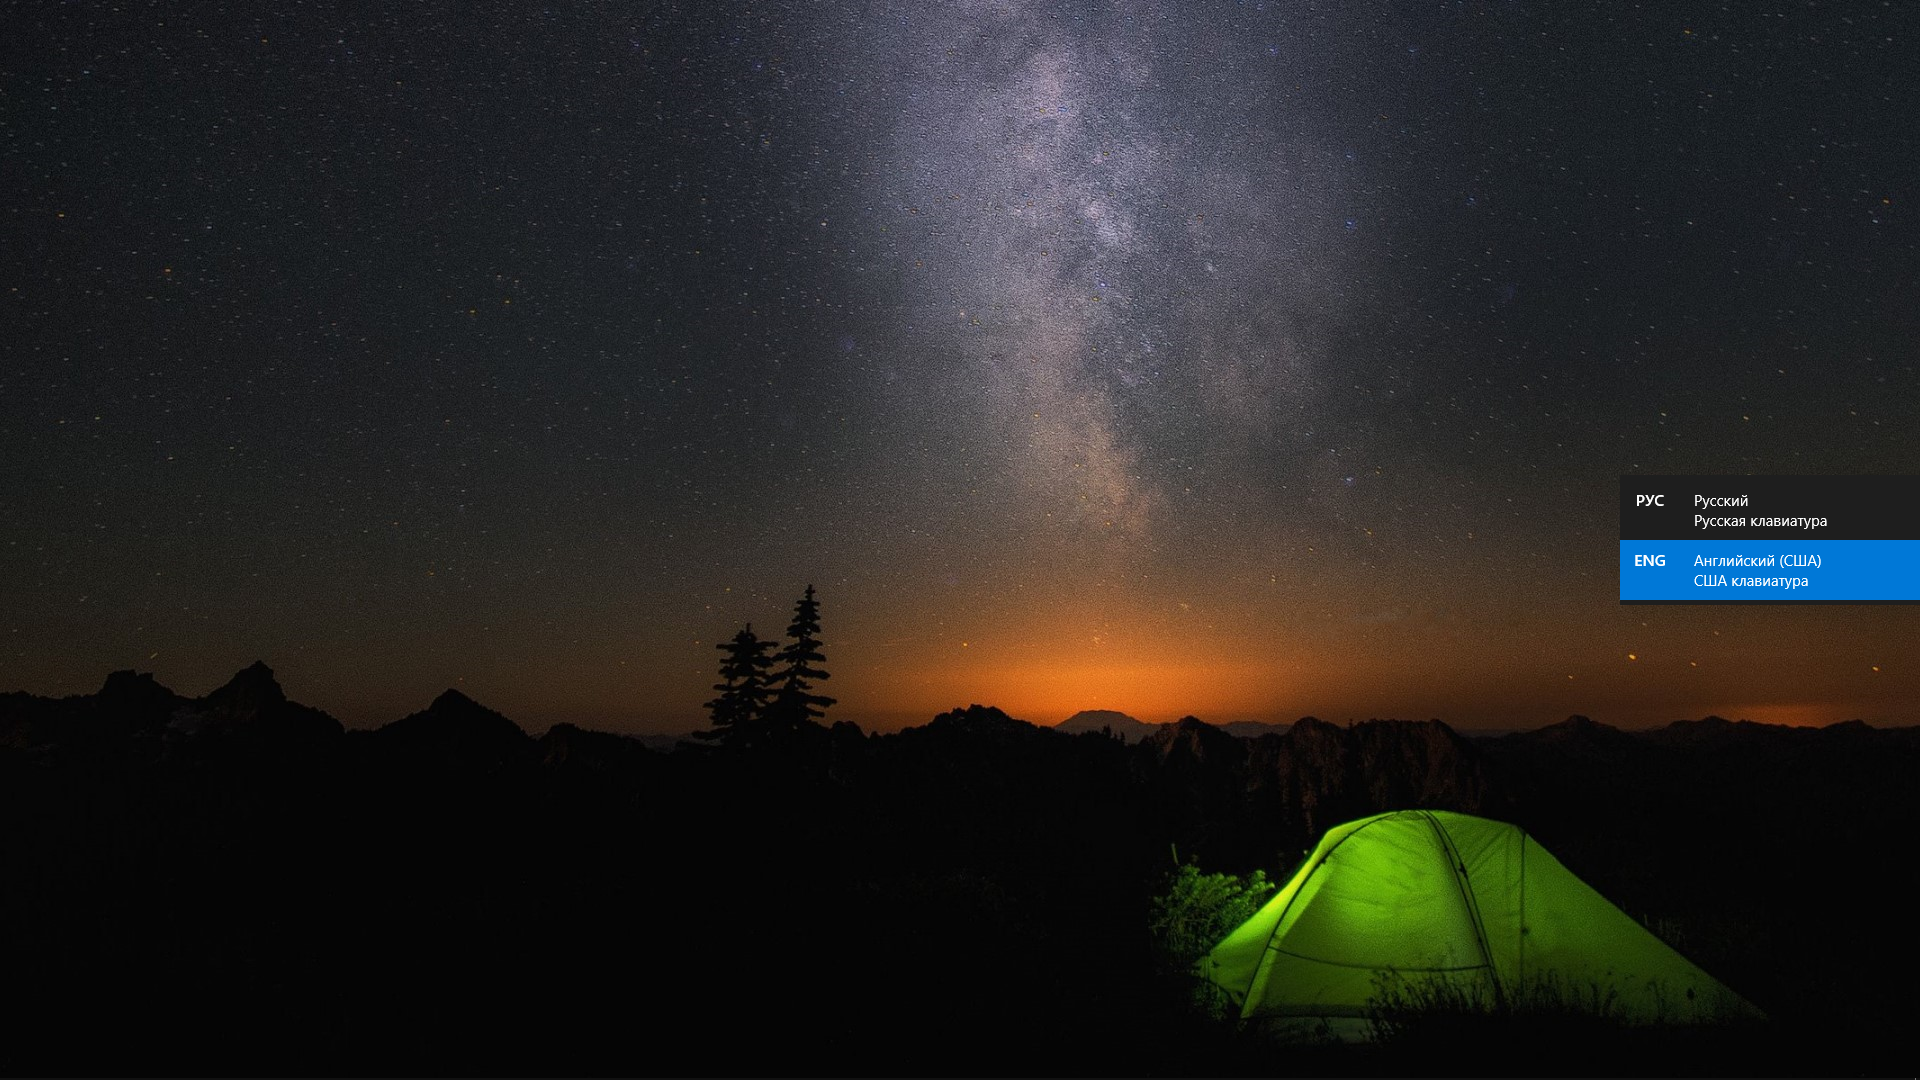 Фото для рабочего стола windows 10 стандартные. Палатка. Палатка виндовс 10. Палатка на фоне звездного неба. Палатка ночью.